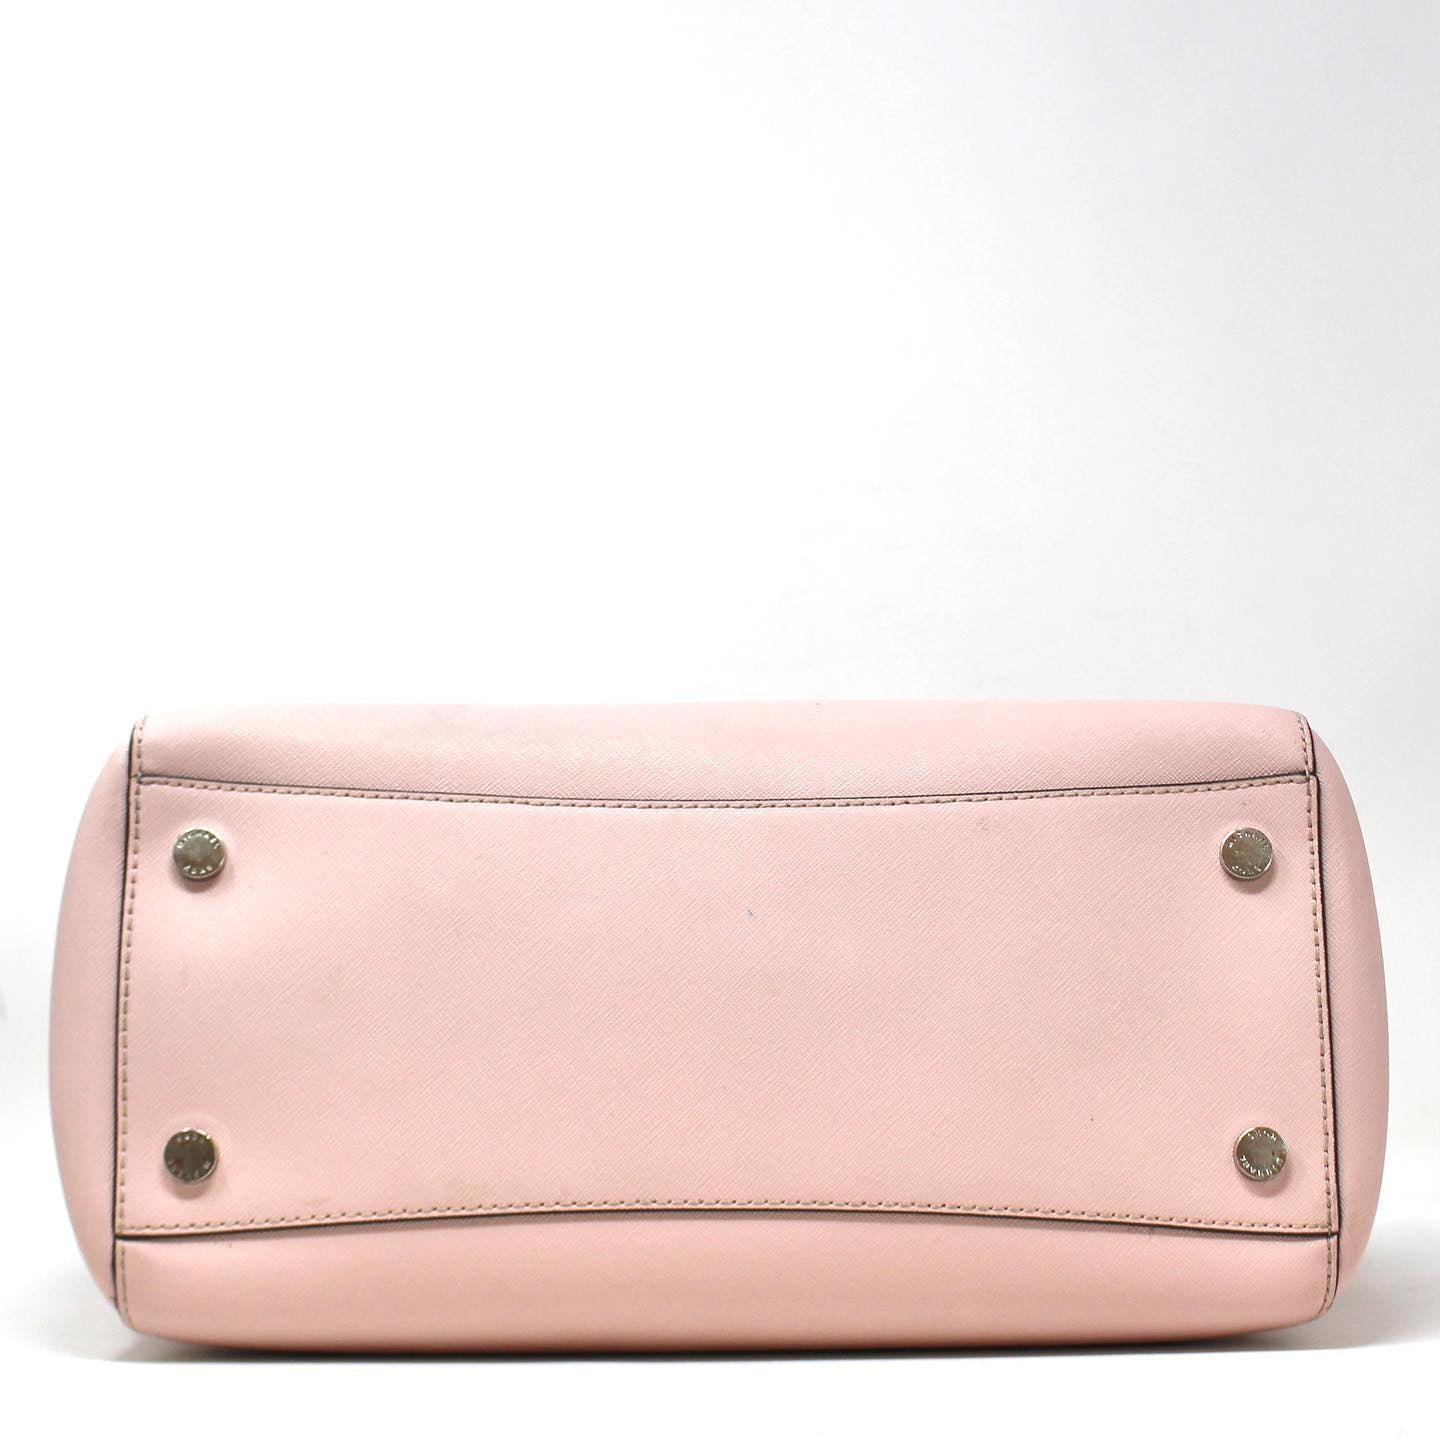 MICHAEL KORS #41785 Light Pink Shoulder Bag